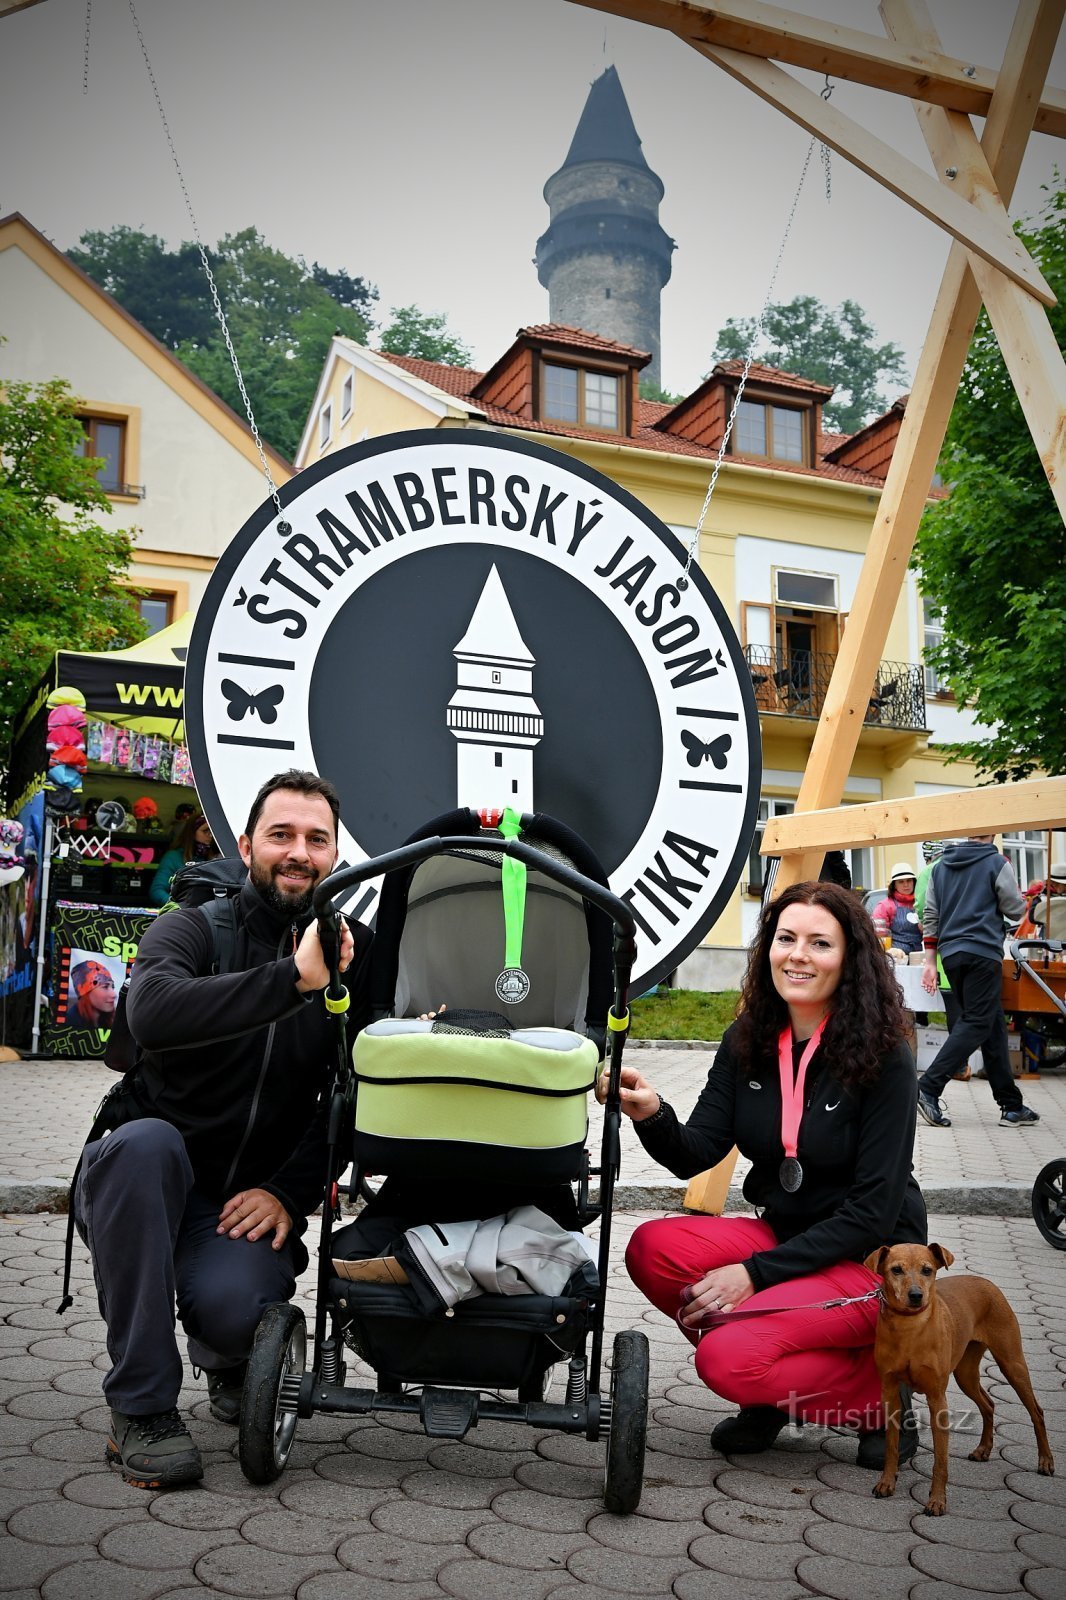 Štramberský Jasoň 2019 – turistmarch gennem Lašská brána starter registrering